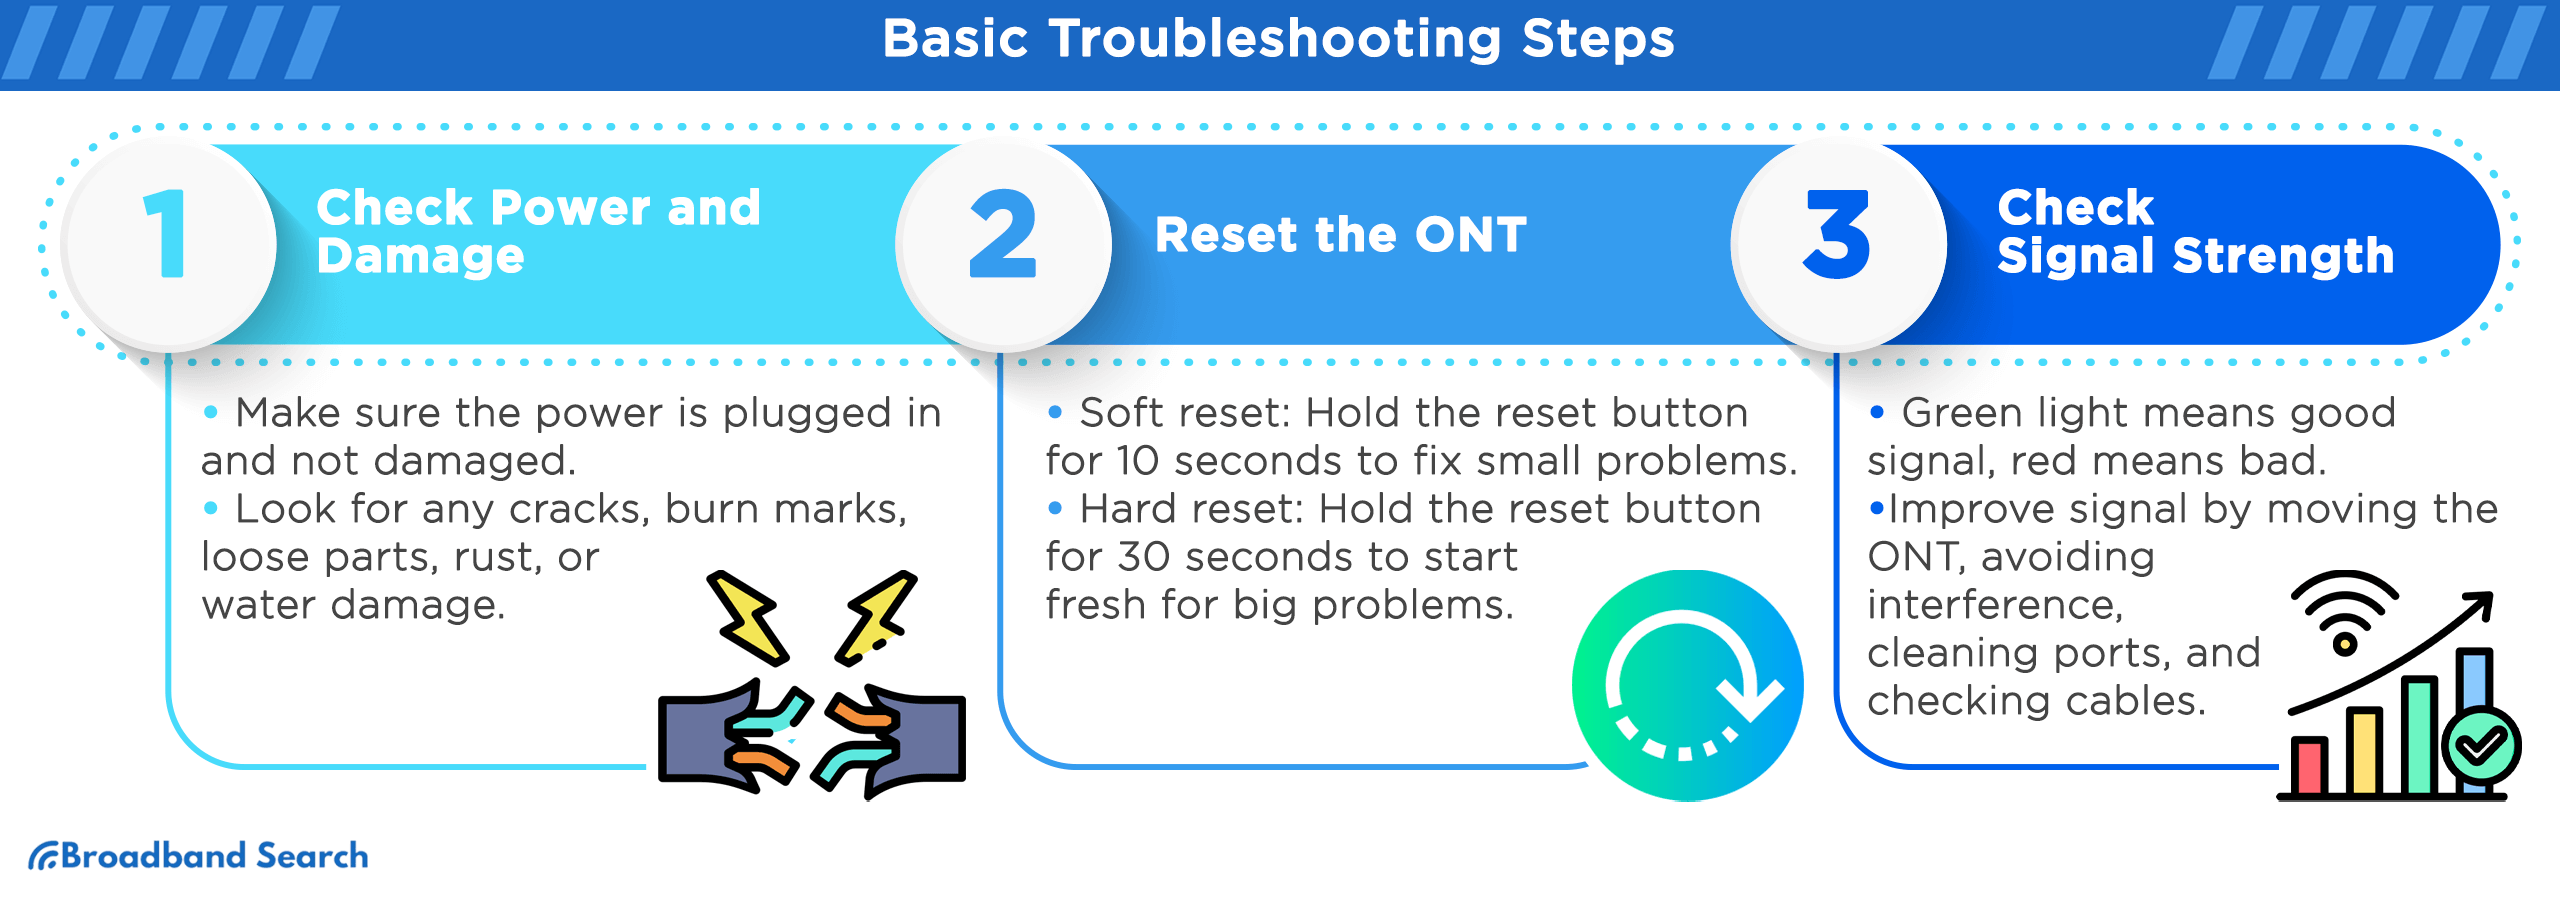 Basic Troubleshooting steps